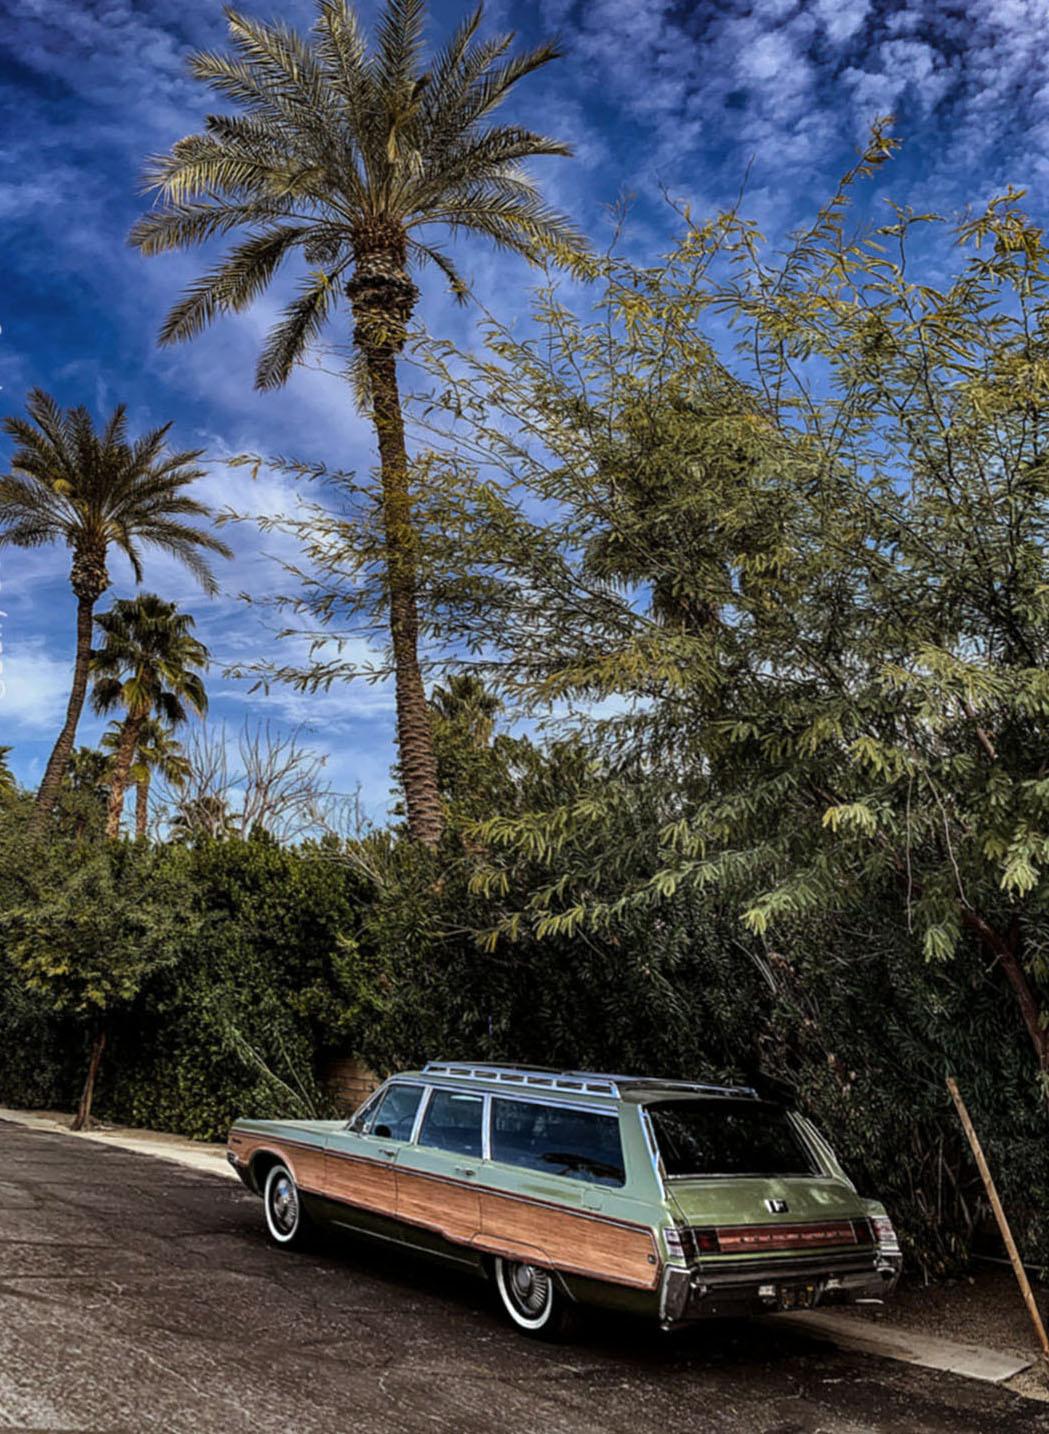 Vintage Wagon (Palm Springs), Sally Davies